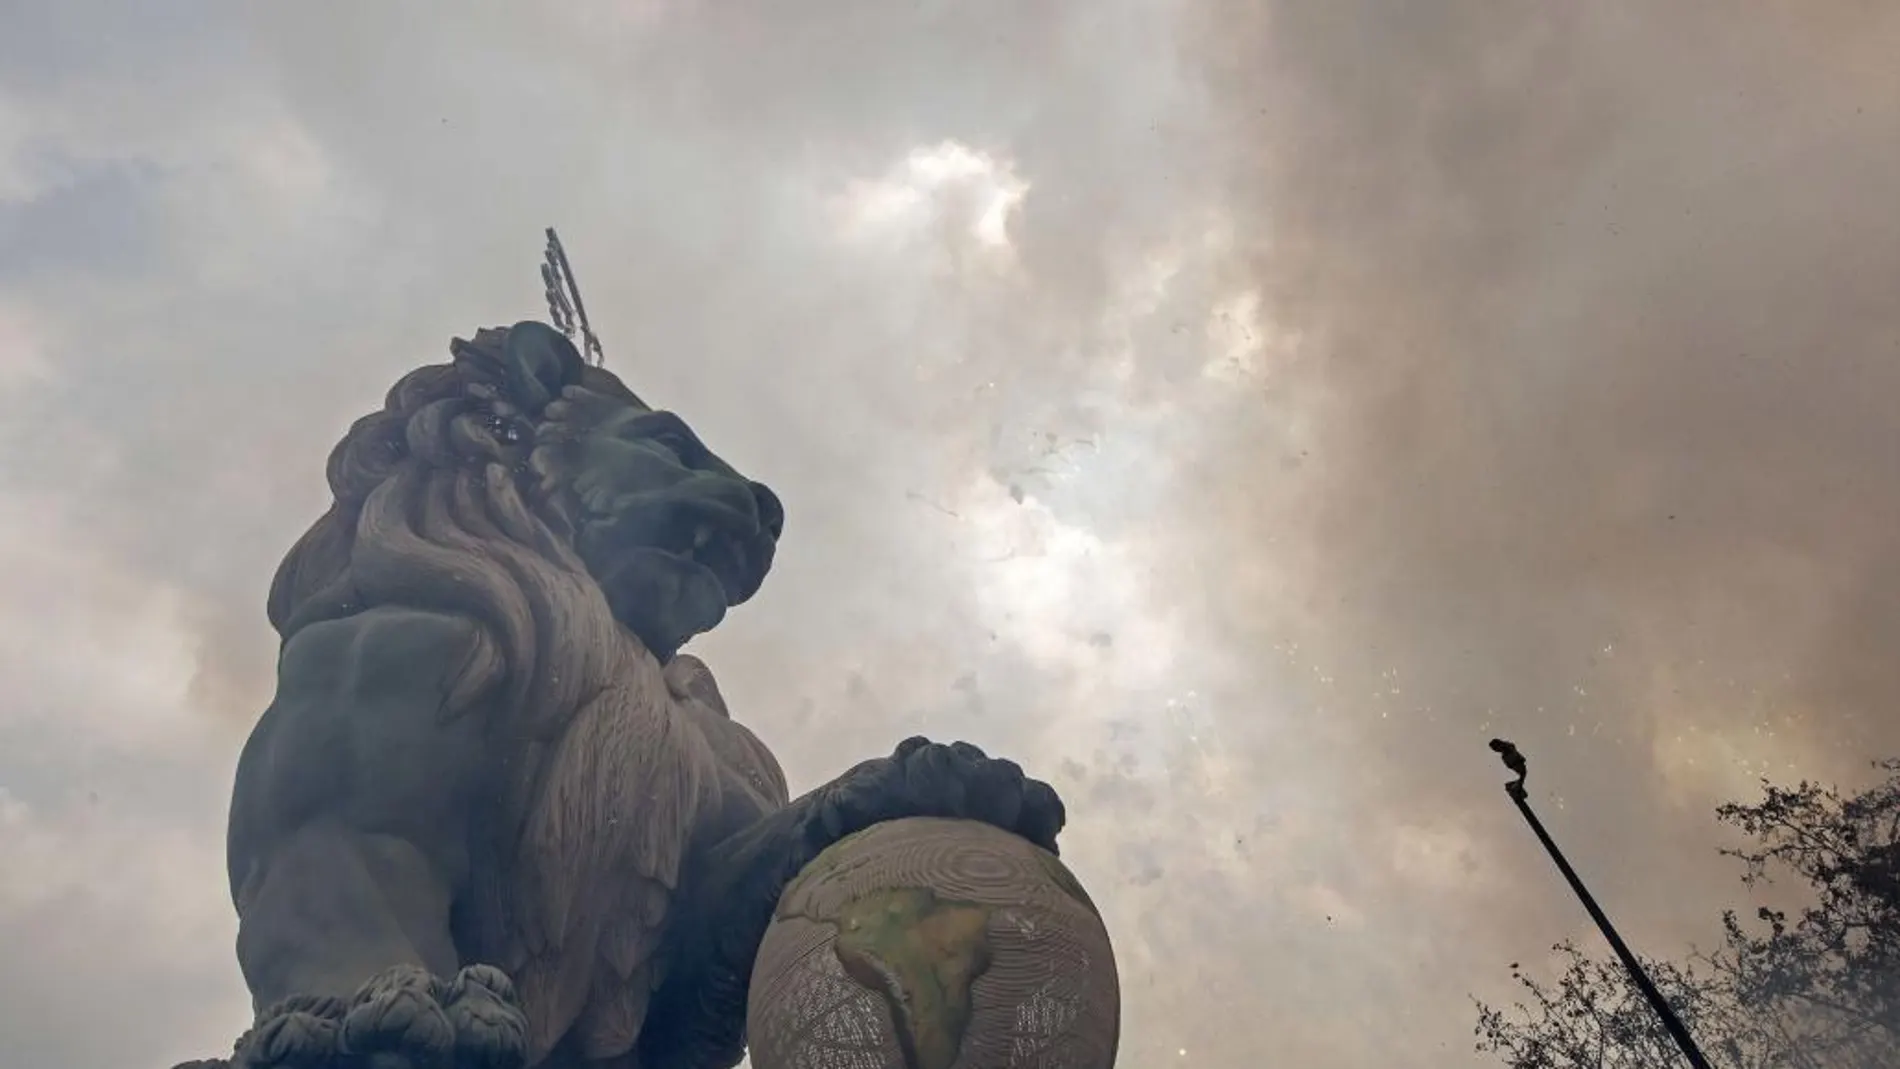 El León del Congreso de los Diputados que corona la falla de la Plaza del Ayuntamiento se ve envuelto en el humo de la polvora durante el disparo de la mascletá